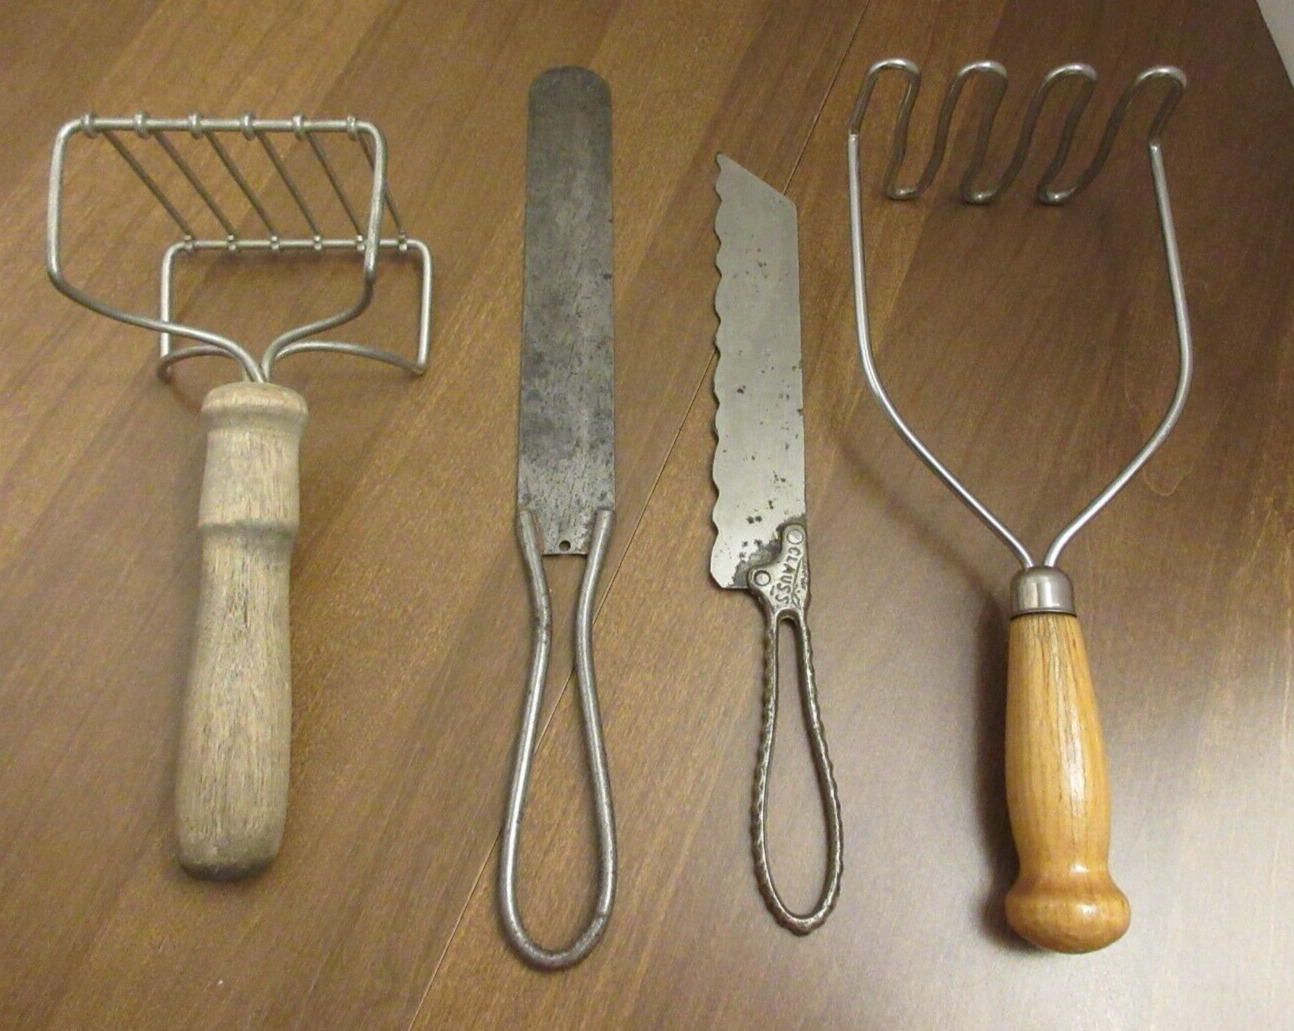 Antique Vintage Kitchen Utensils Tools Potato Masher Spreader Clauss Bread Knife